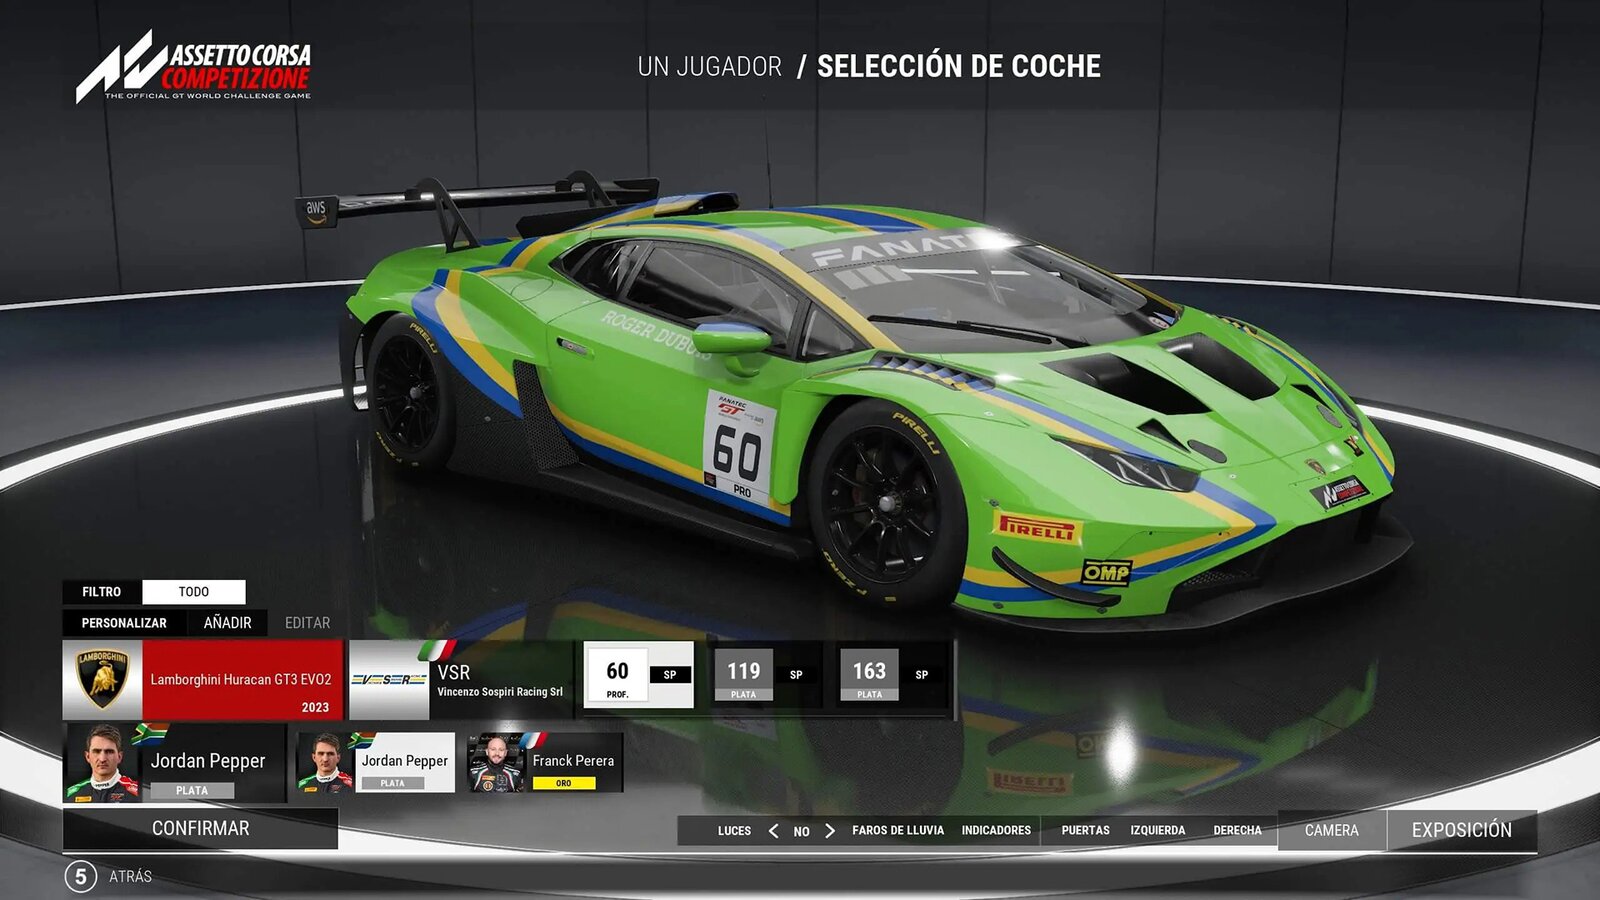 Assetto Corsa Competizione - GT2 Pack